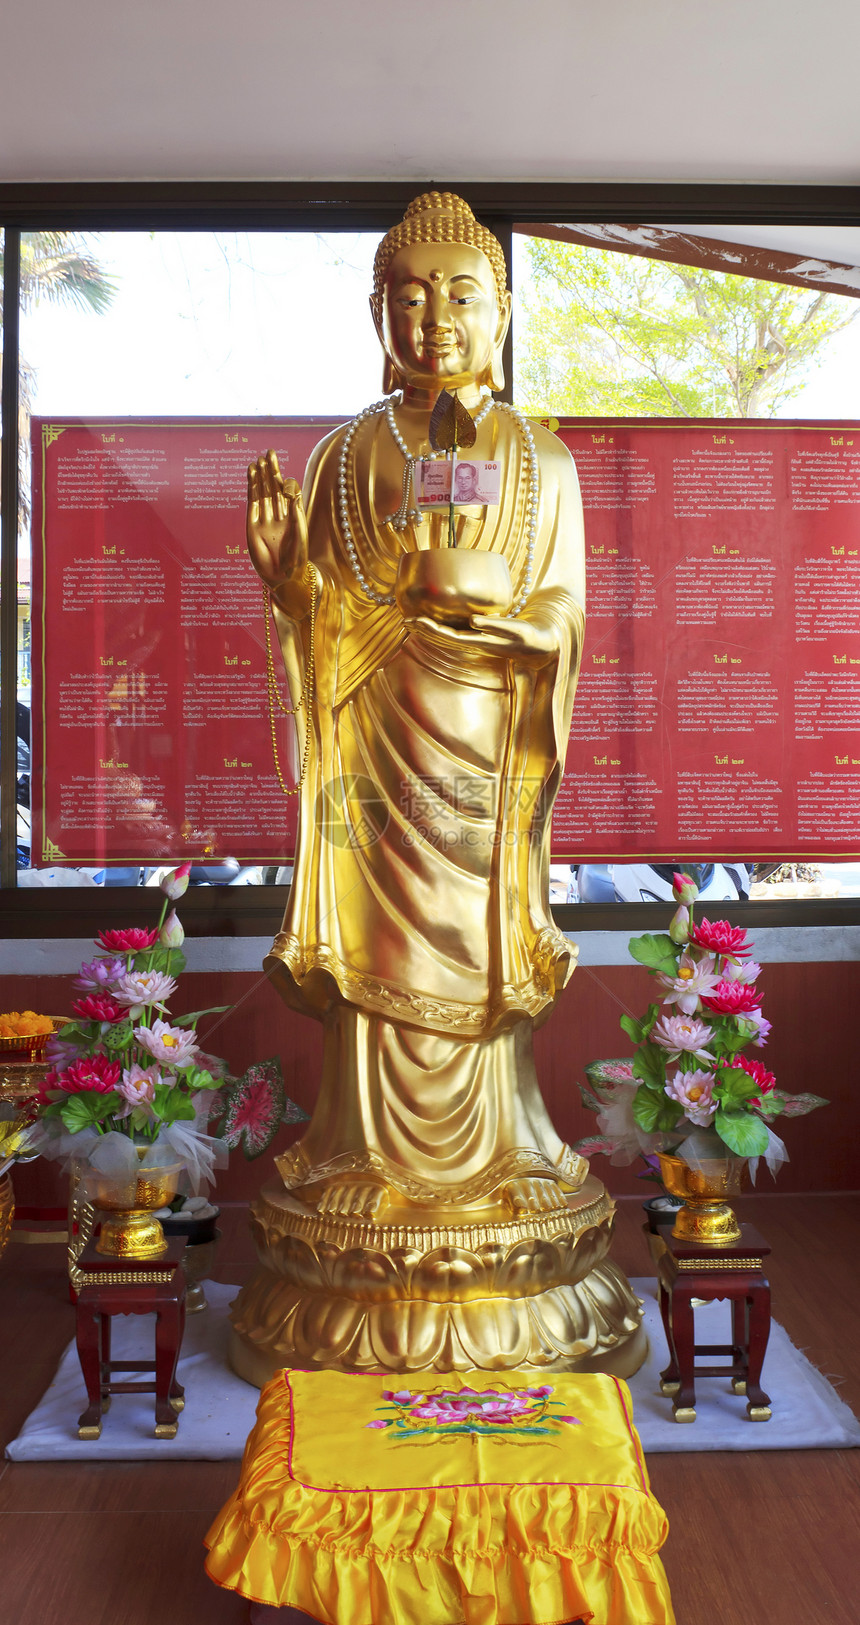 宽燕雕像精神古董寺庙菩萨佛教徒信仰宗教传统历史文化图片